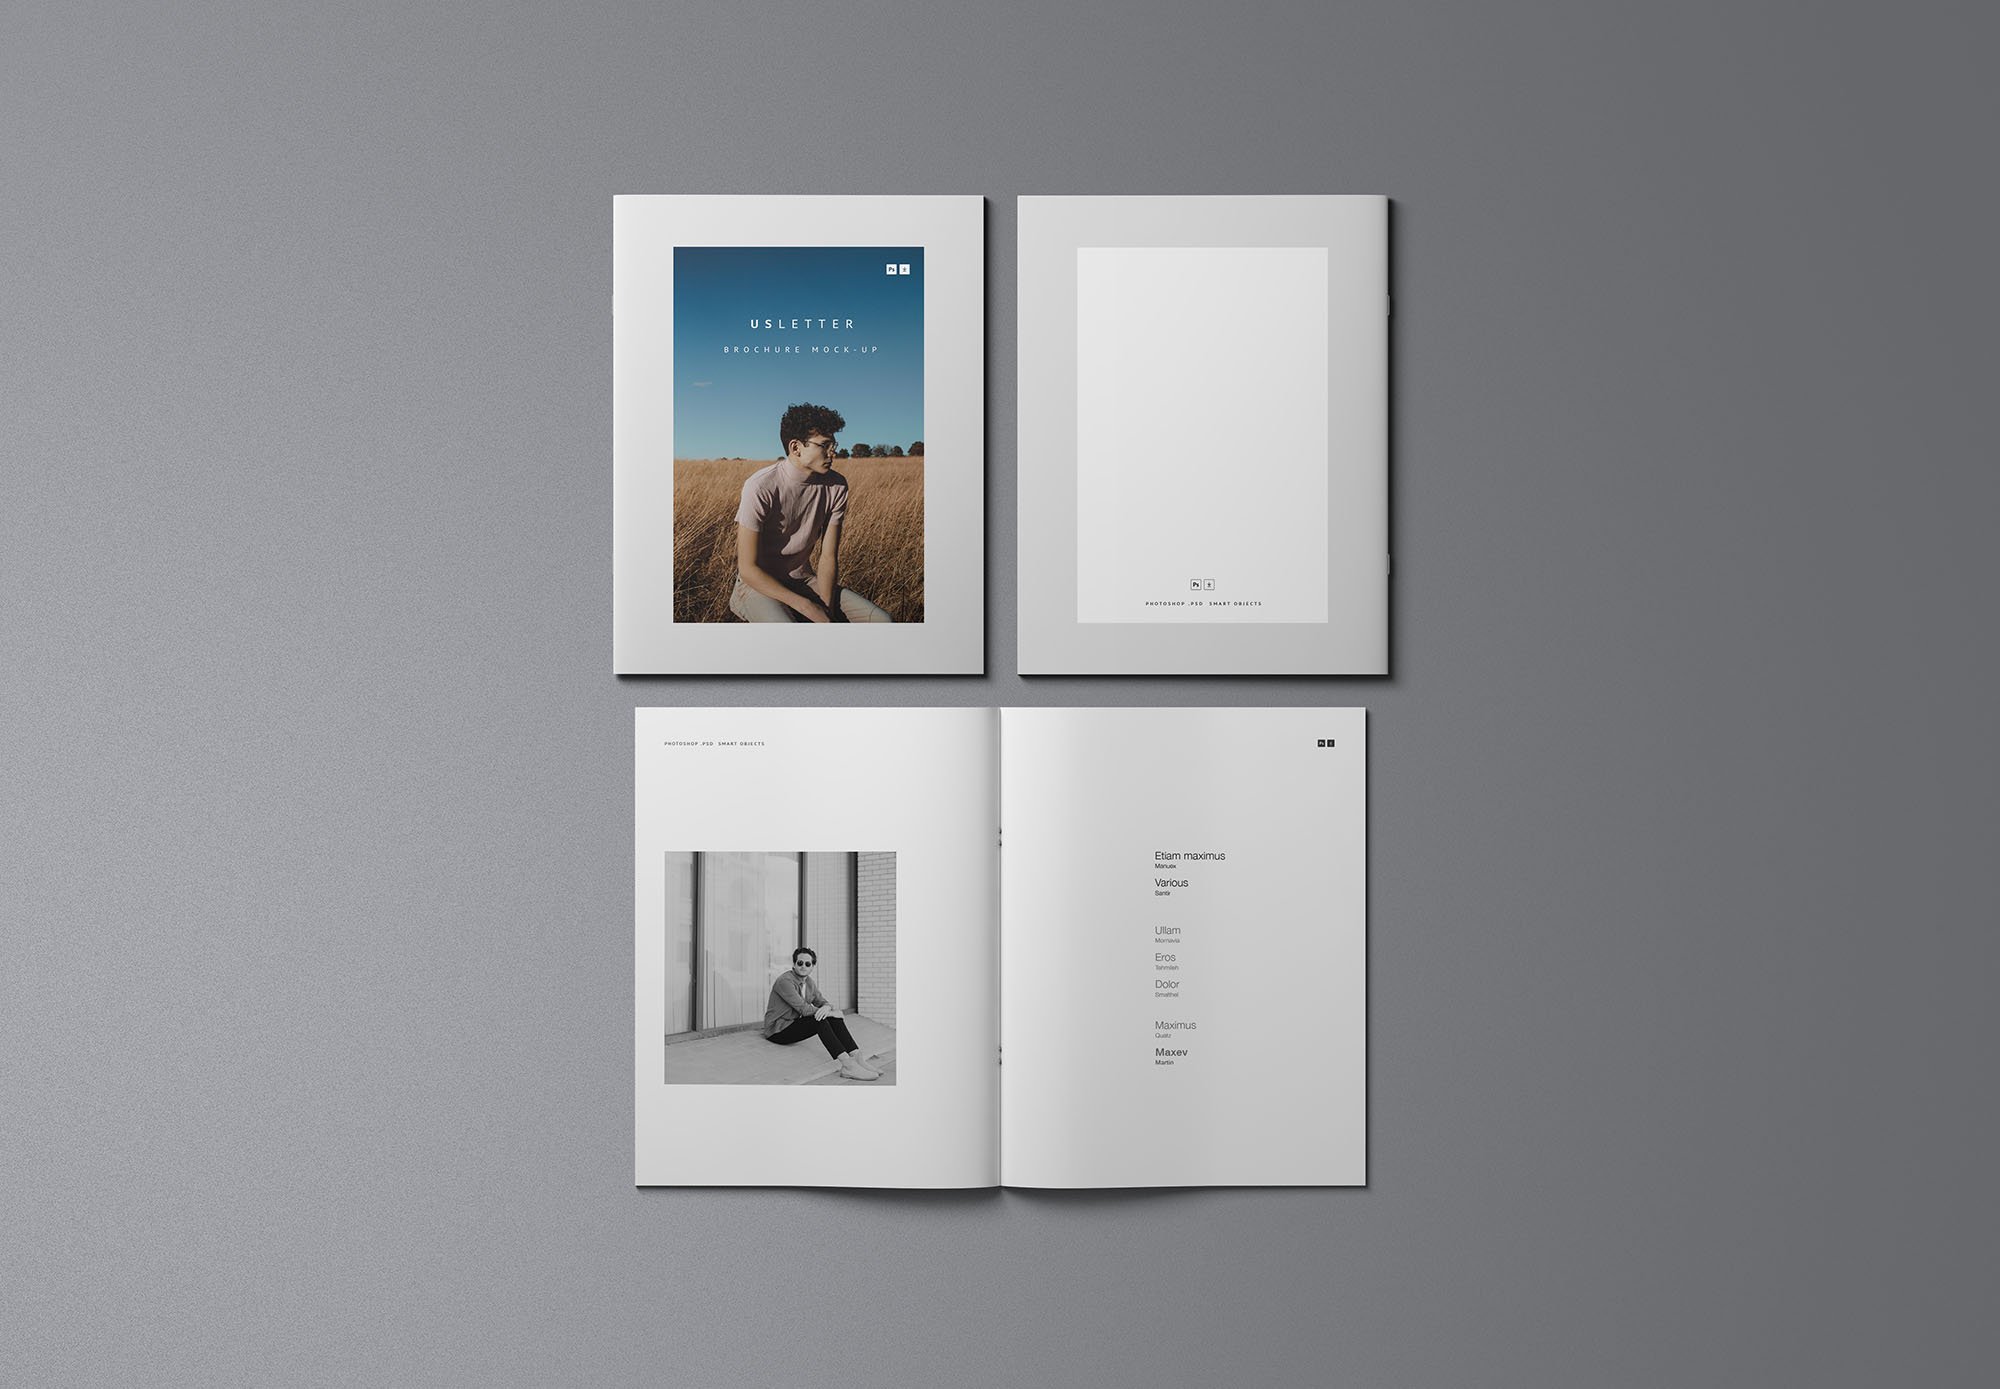 时尚简约优雅的专业画册杂志设计样机展示 Fashion Simple And Elegant Professional Album Magazine Design Prototype Show[2.16G]插图8